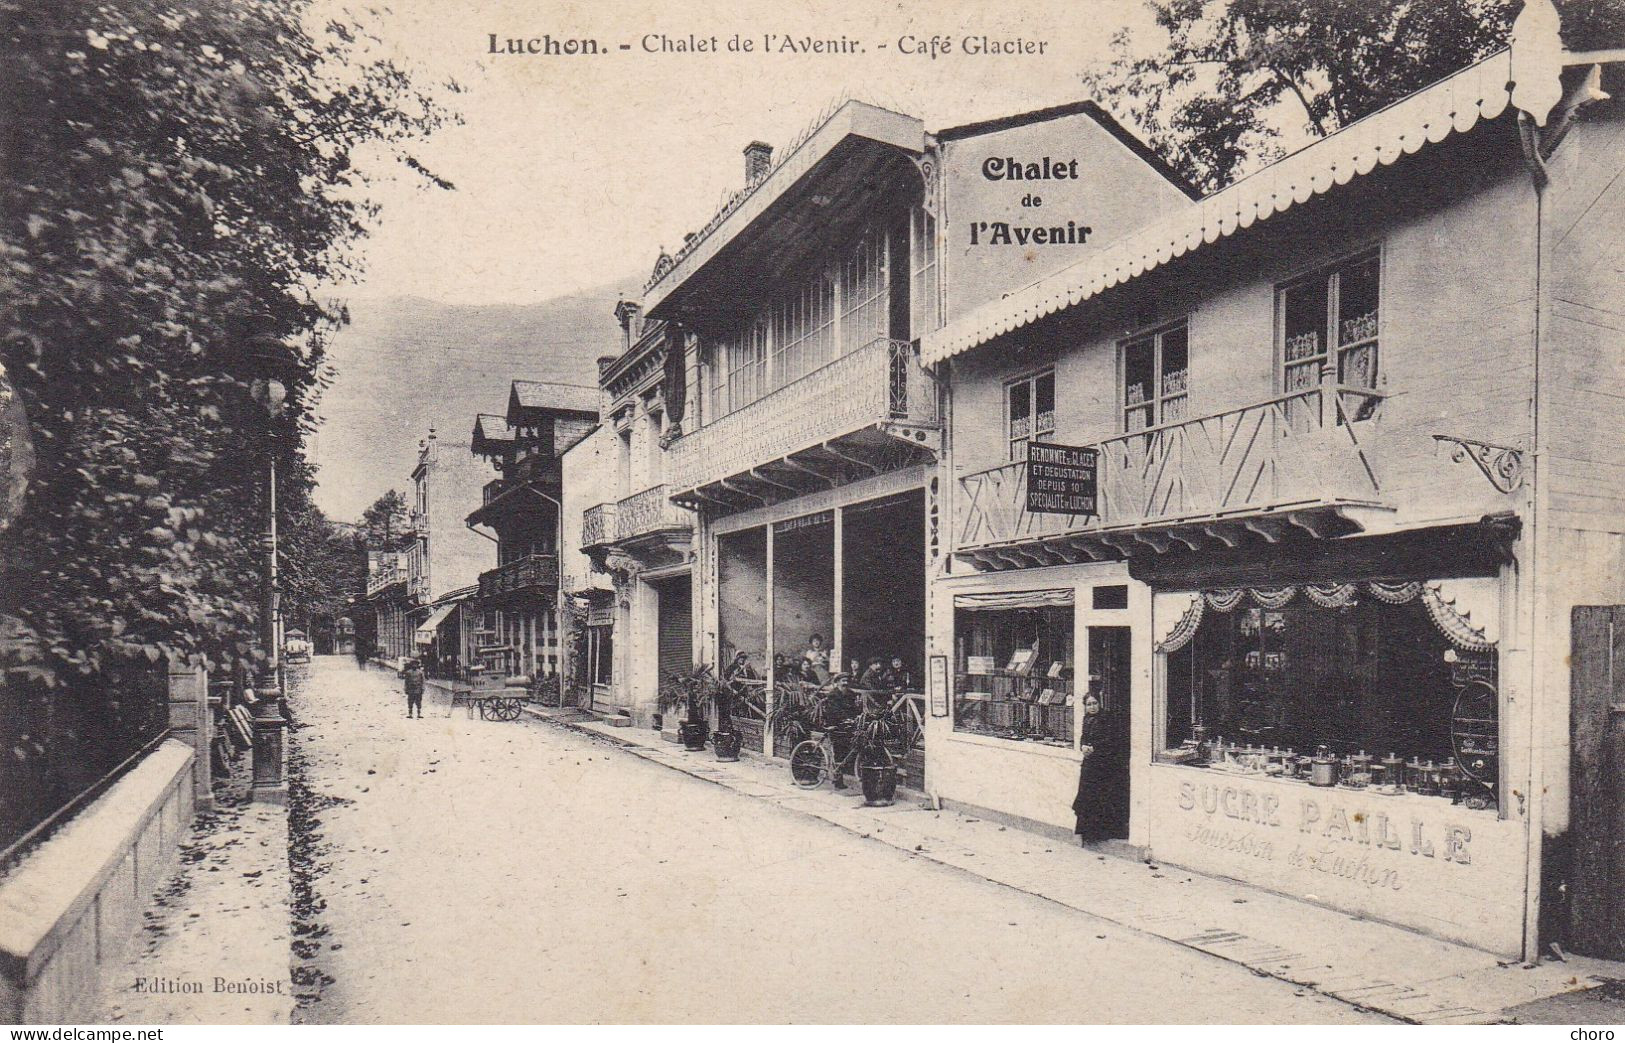 31 - LUCHON - CHALET DE L'AVENIR - CAFE GLACIER - Luchon